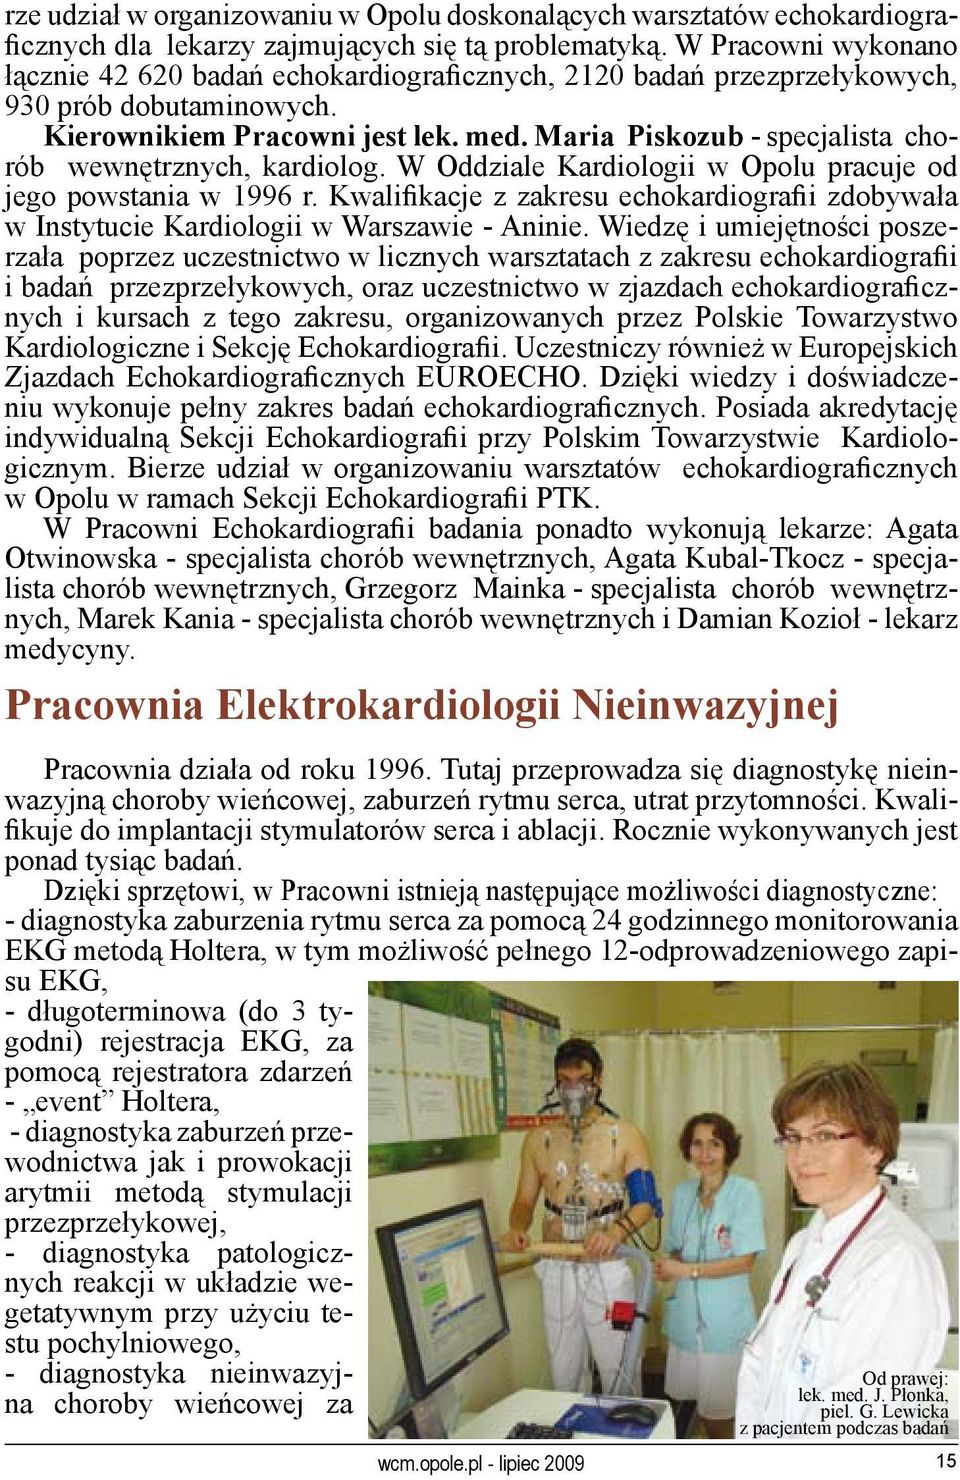 Maria Piskozub - specjalista chorób wewnętrznych, kardiolog. W Oddziale Kardiologii w Opolu pracuje od jego powstania w 1996 r.